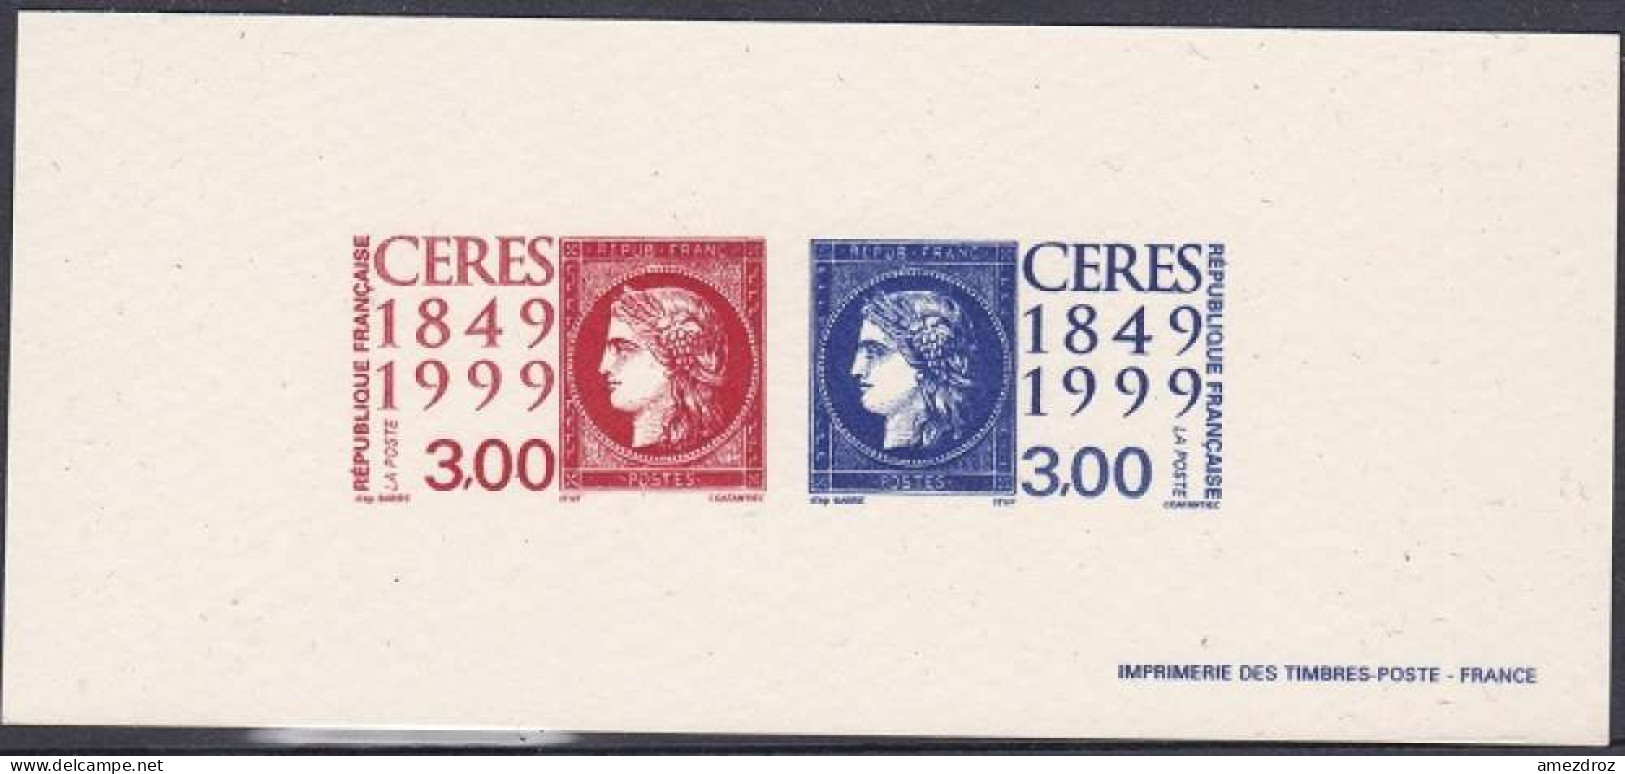 France Gravure Officielle Cérès (3) - Documents Of Postal Services